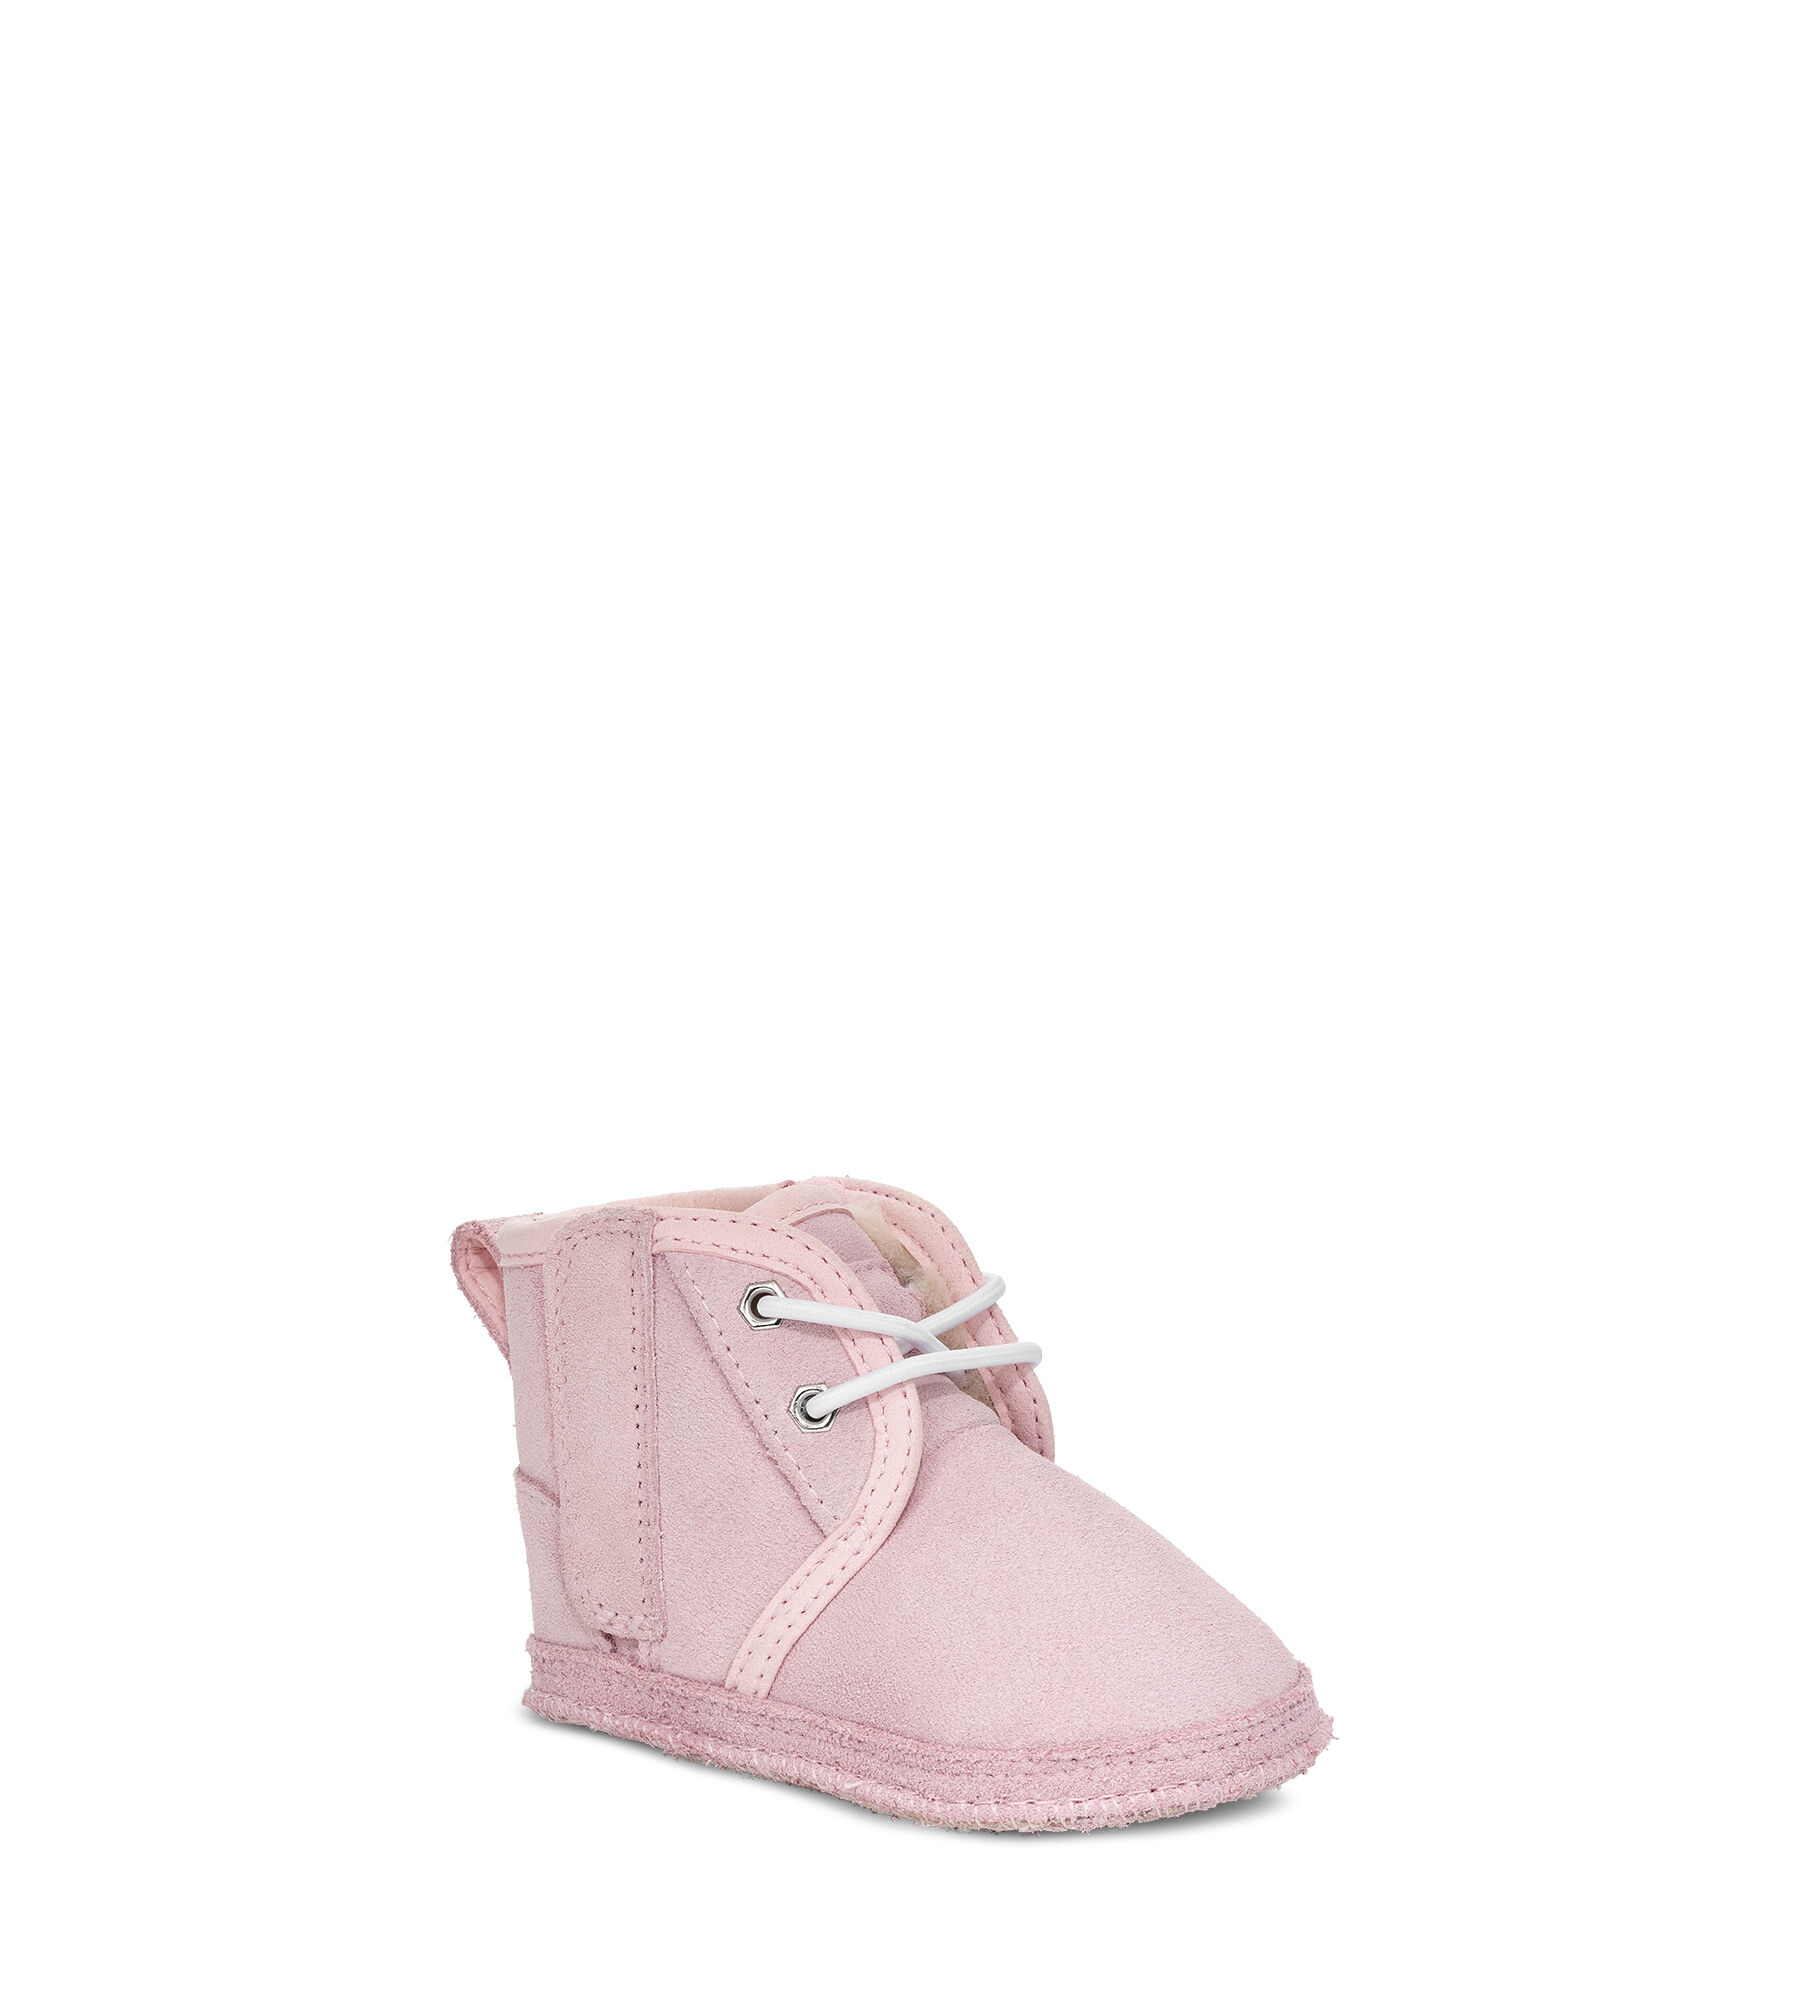 infant ugg boots sale